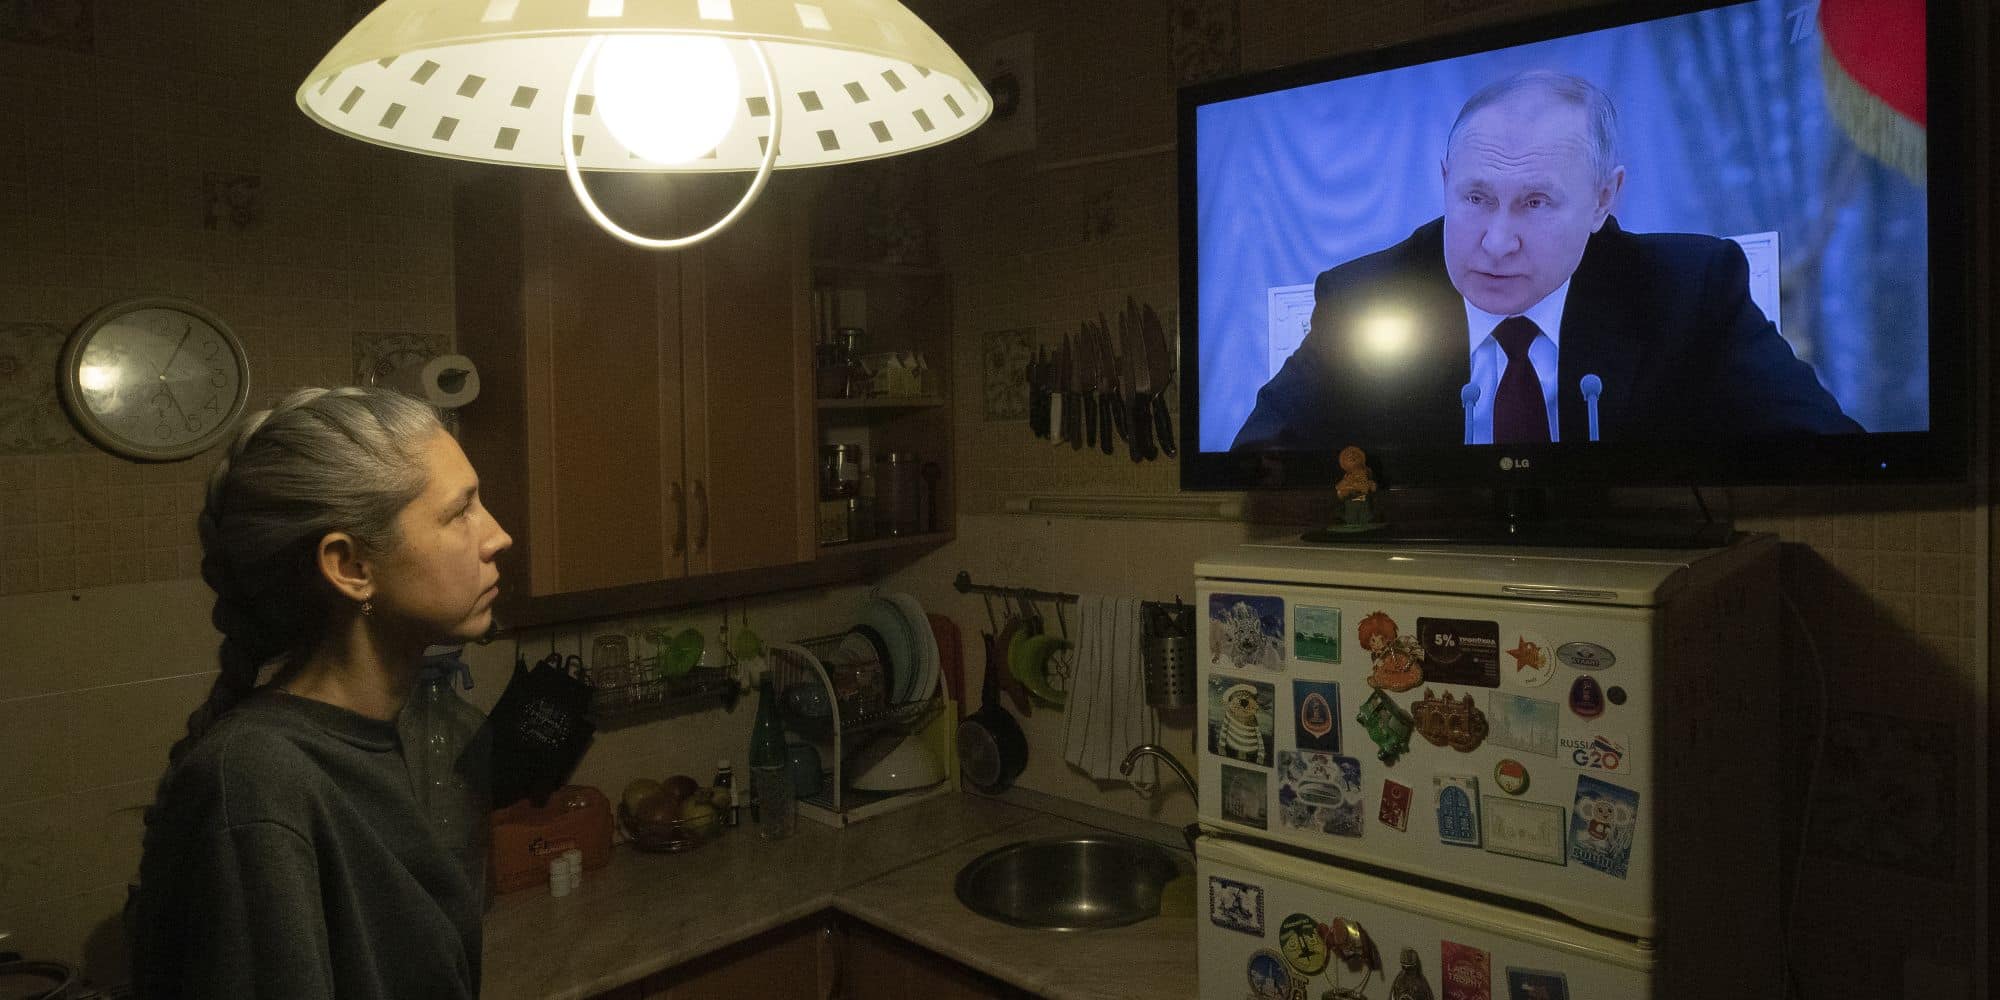 Γυναίκα ρωσόφωνη παρακολουθεί τον Πούτιν στην τηλεόραση